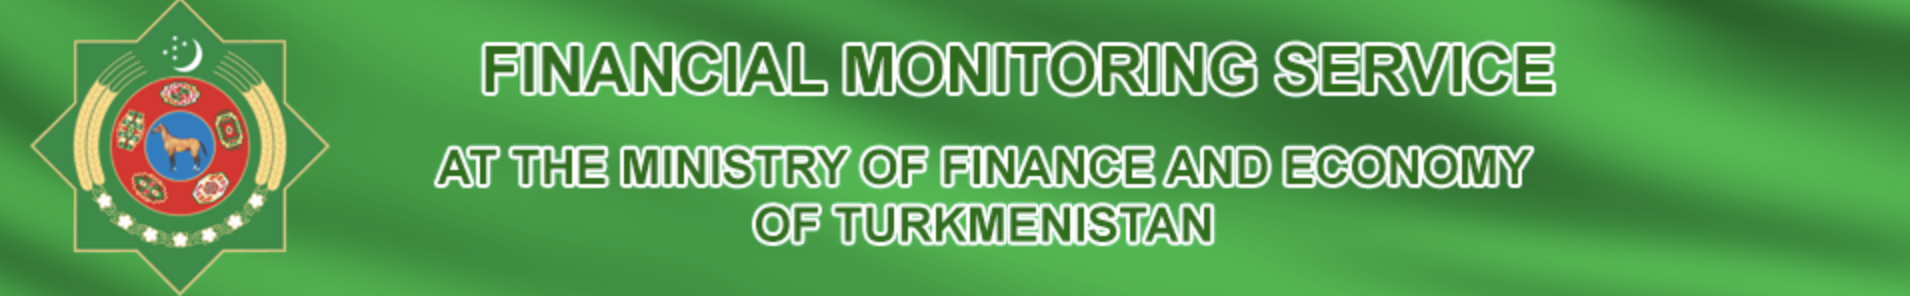 Logotipo do Ministério das Finanças do Turquemenistão